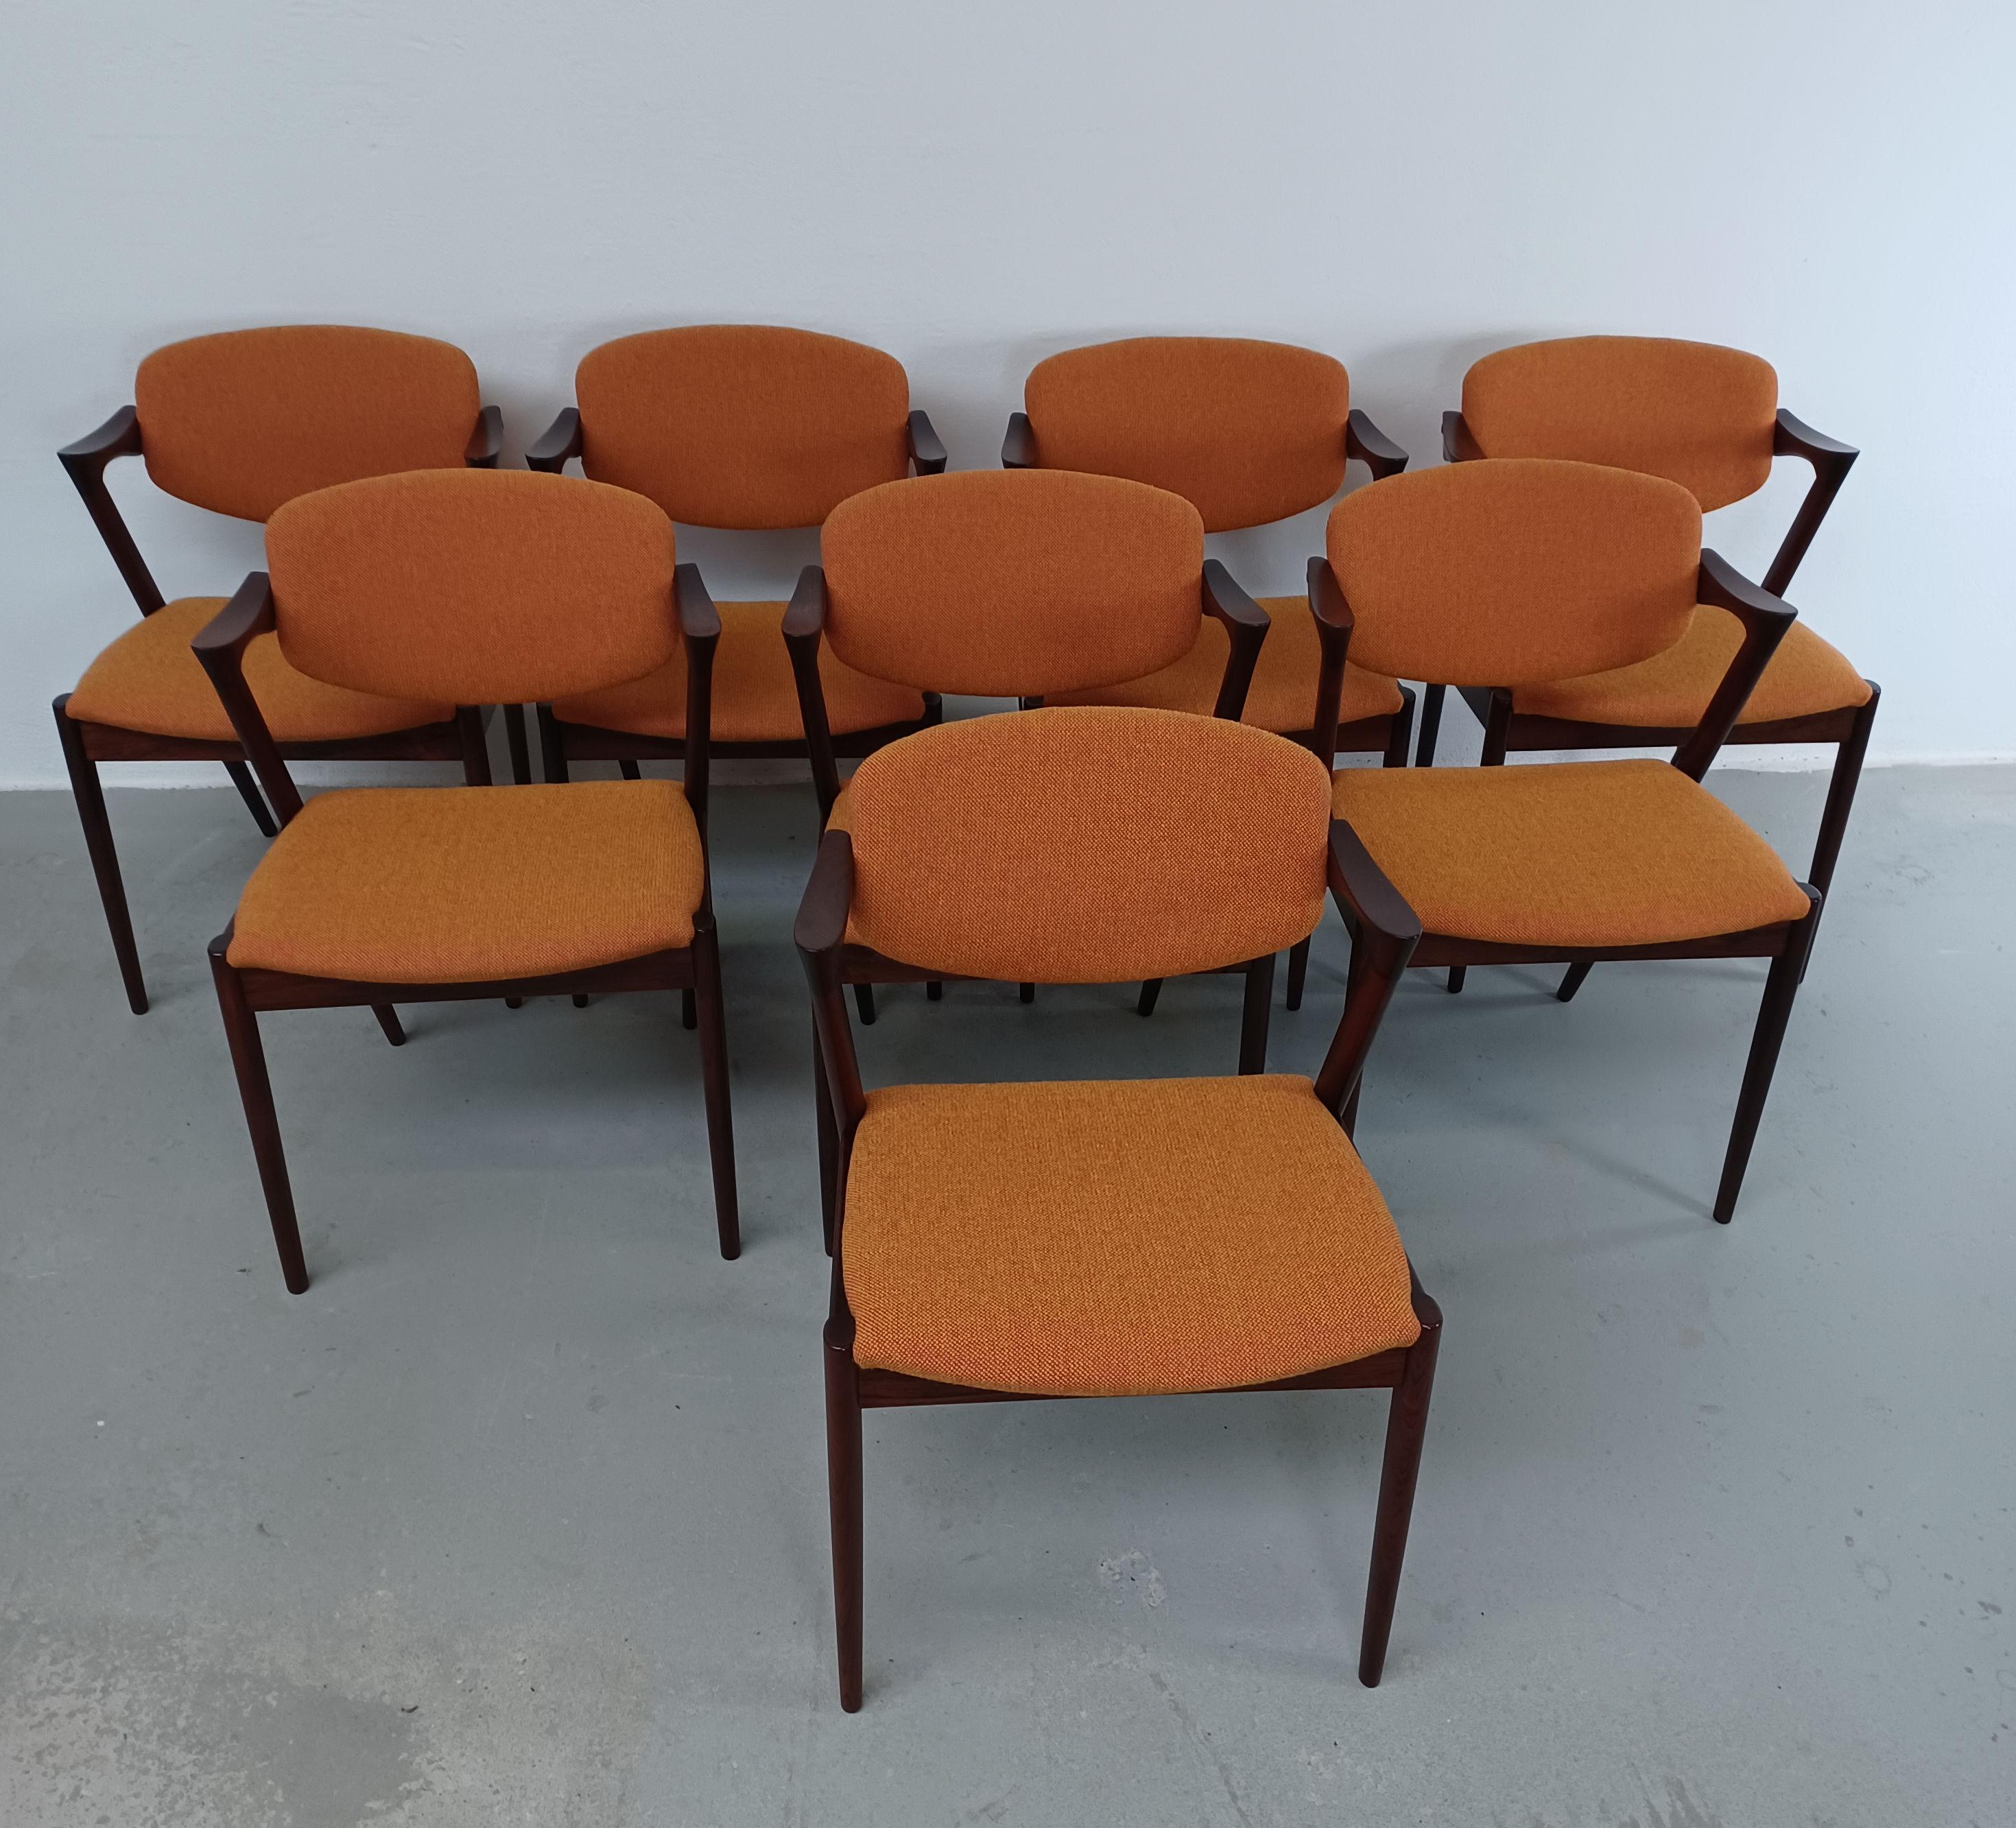 Ensemble de huit chaises de salle à manger en bois de rose des années 1960, entièrement restaurées, par Kai Kristiansen pour Schous Møbelfabrik, avec rembourrage personnalisé.

Les chaises ont le design léger et élégant typique de Kai Kristiansens,